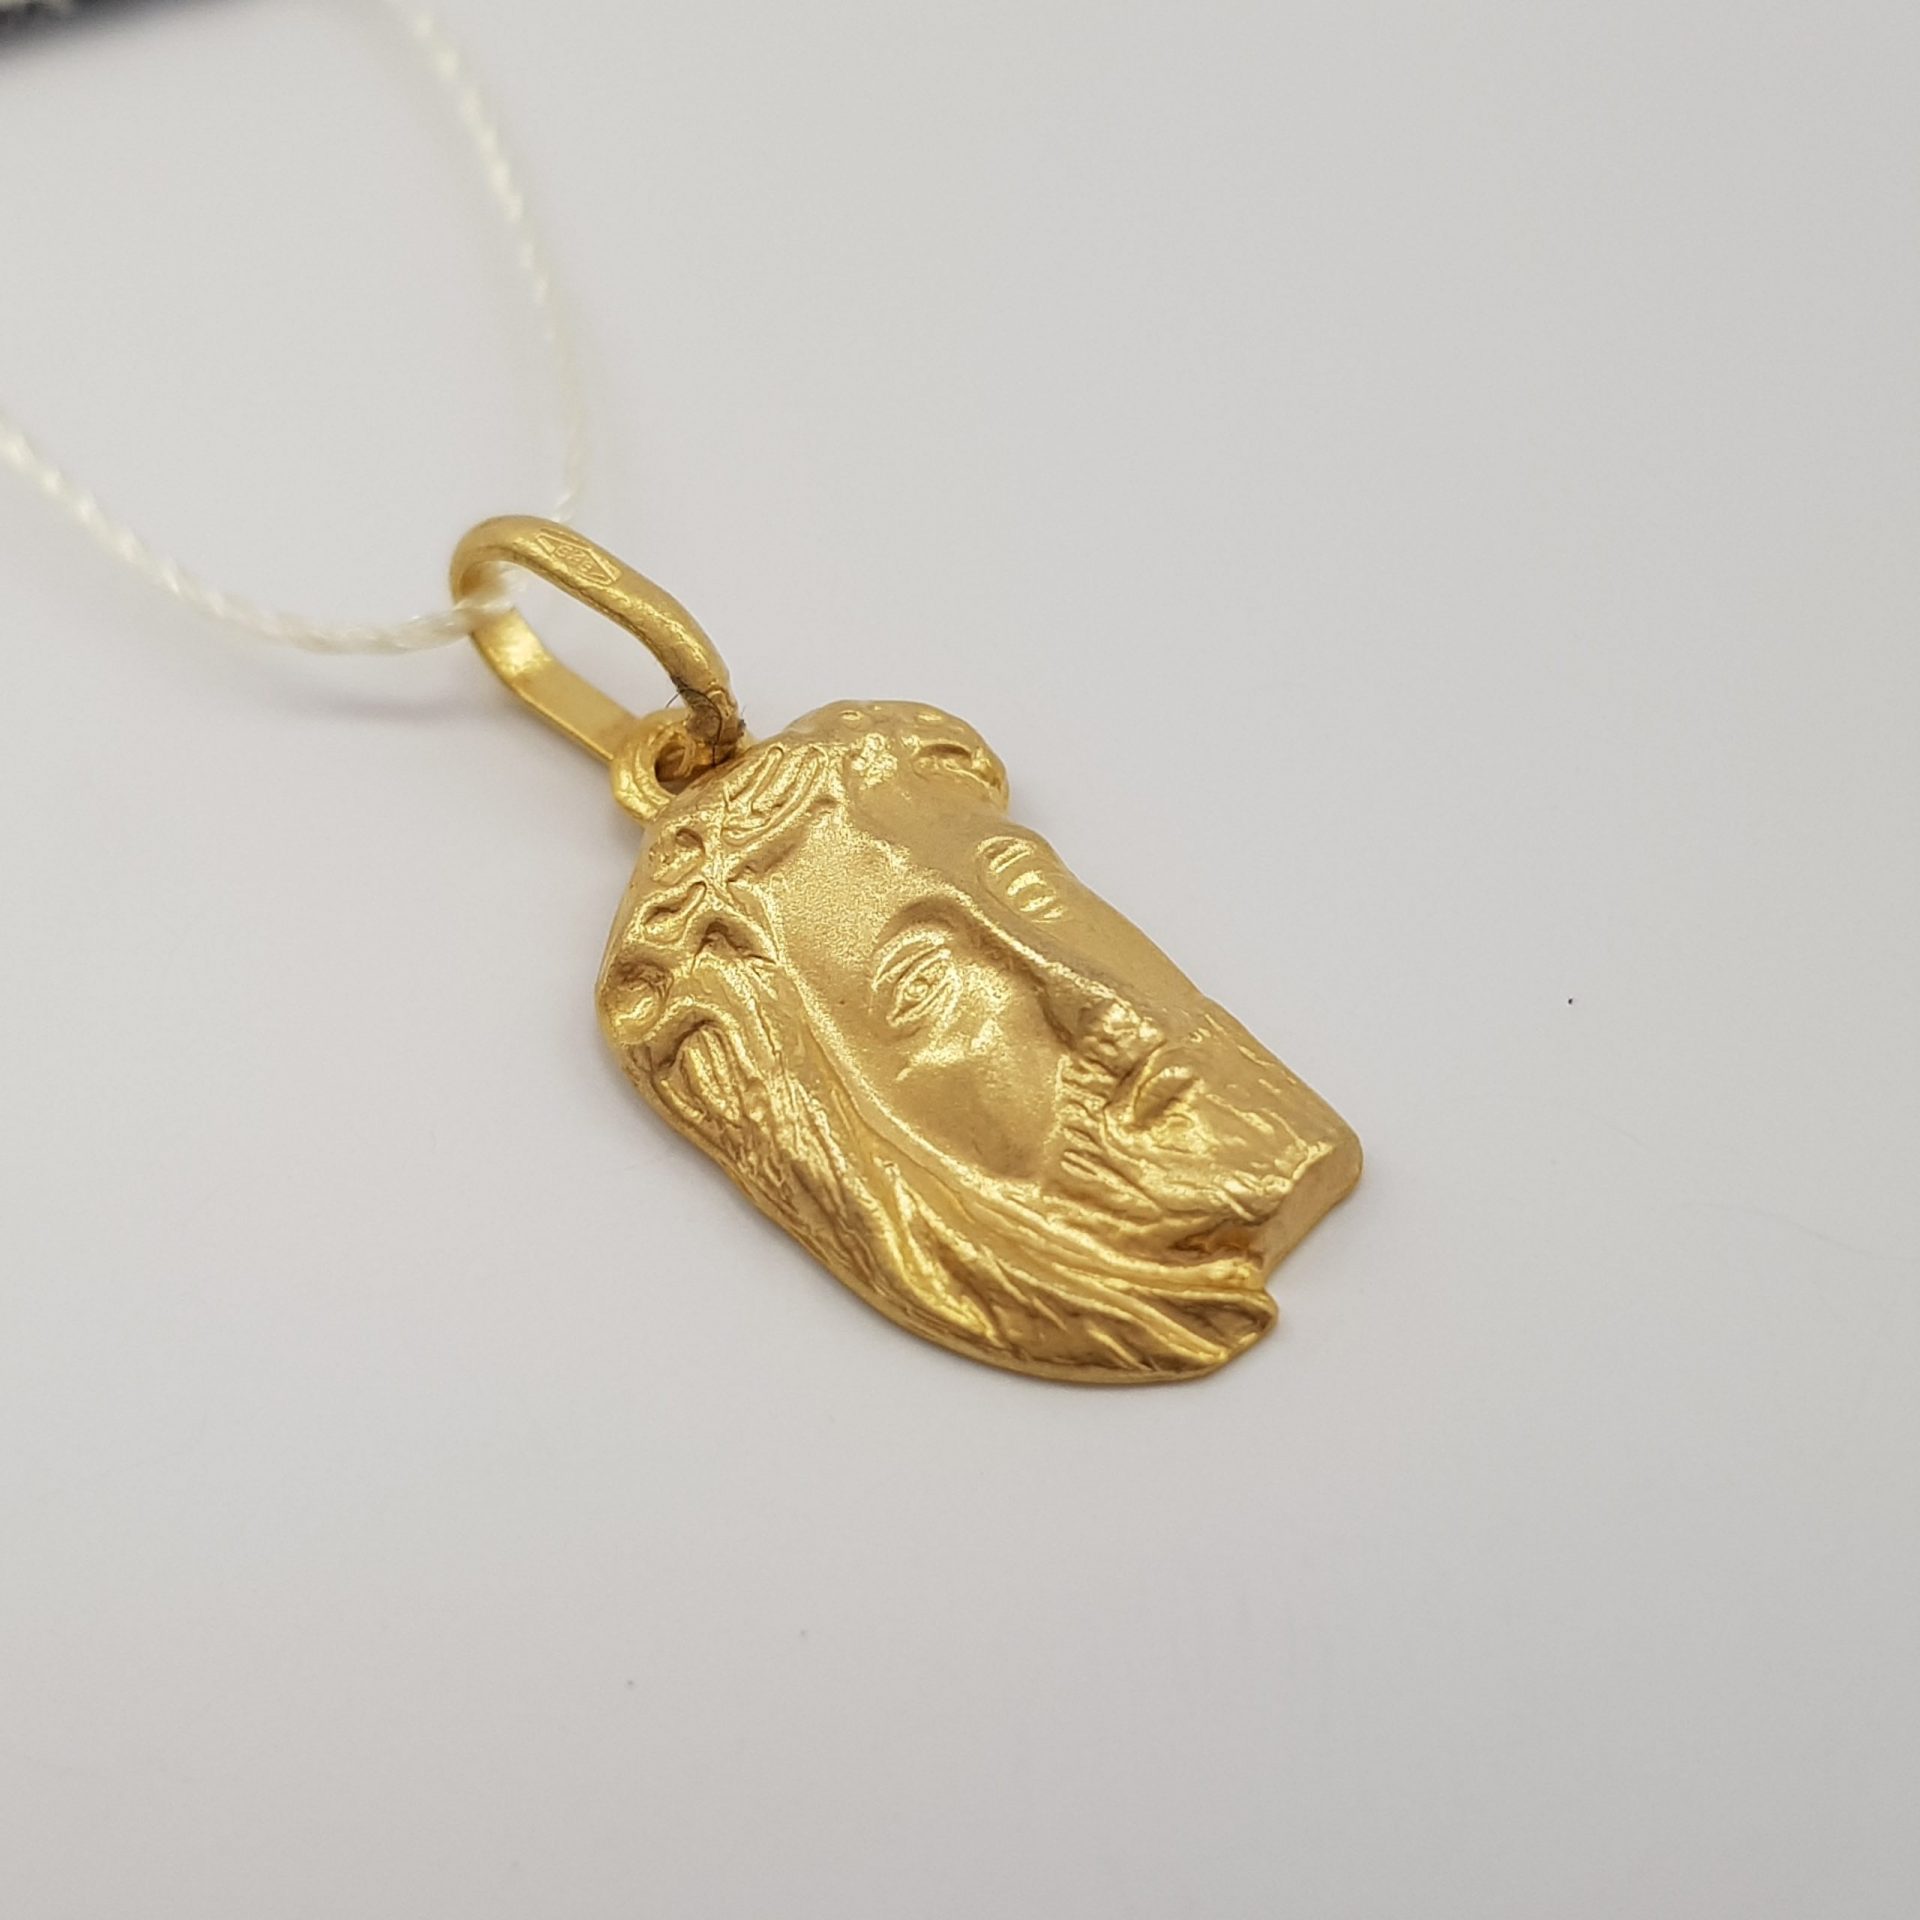 Medalik złoty - głowa Chrystusa w żółtym złocie